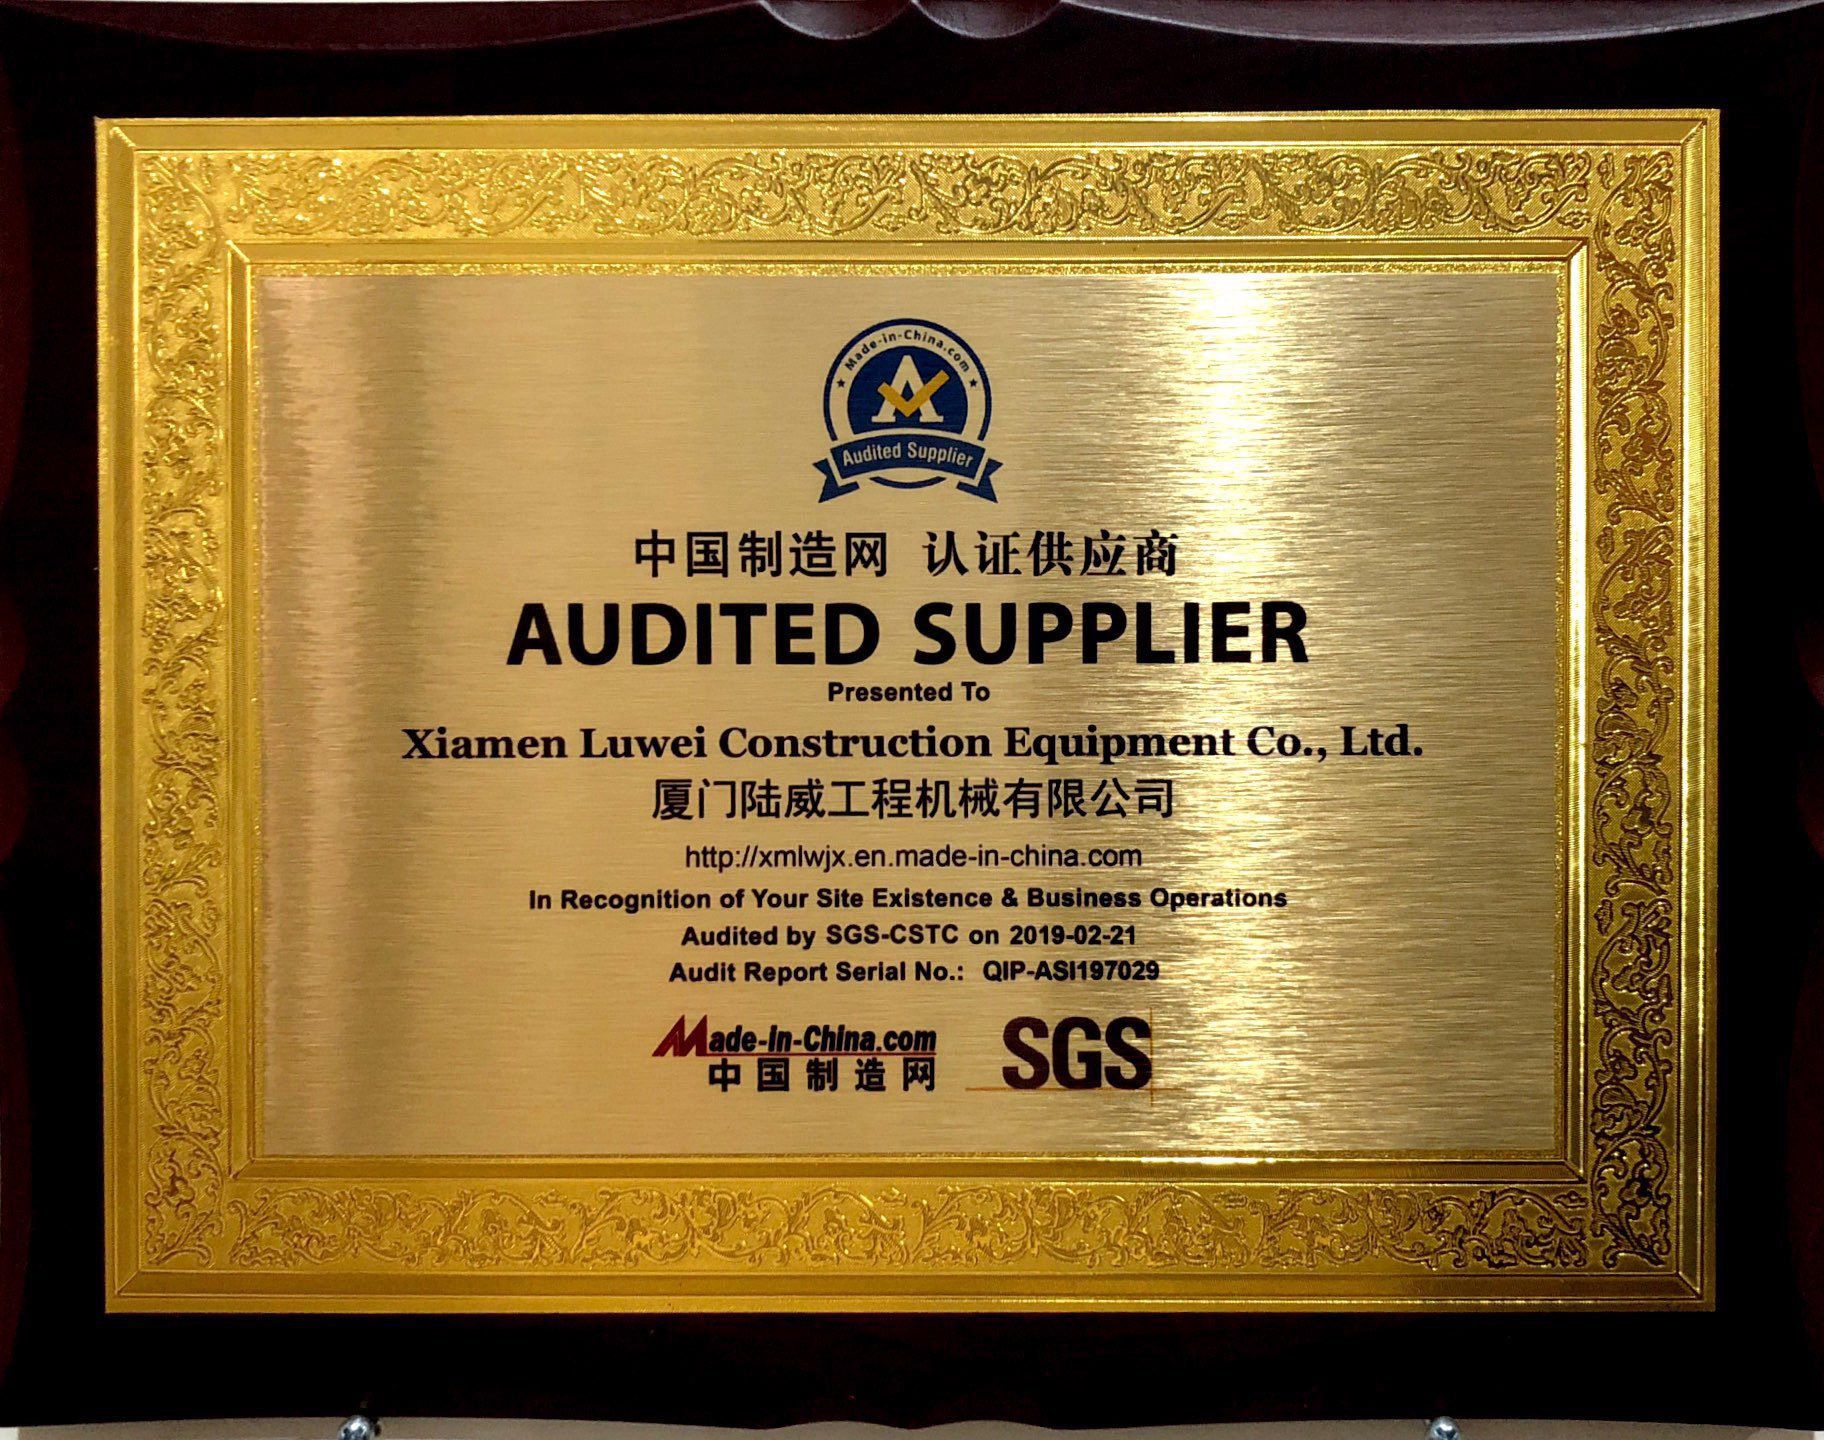 中国制造网认证供应商2019